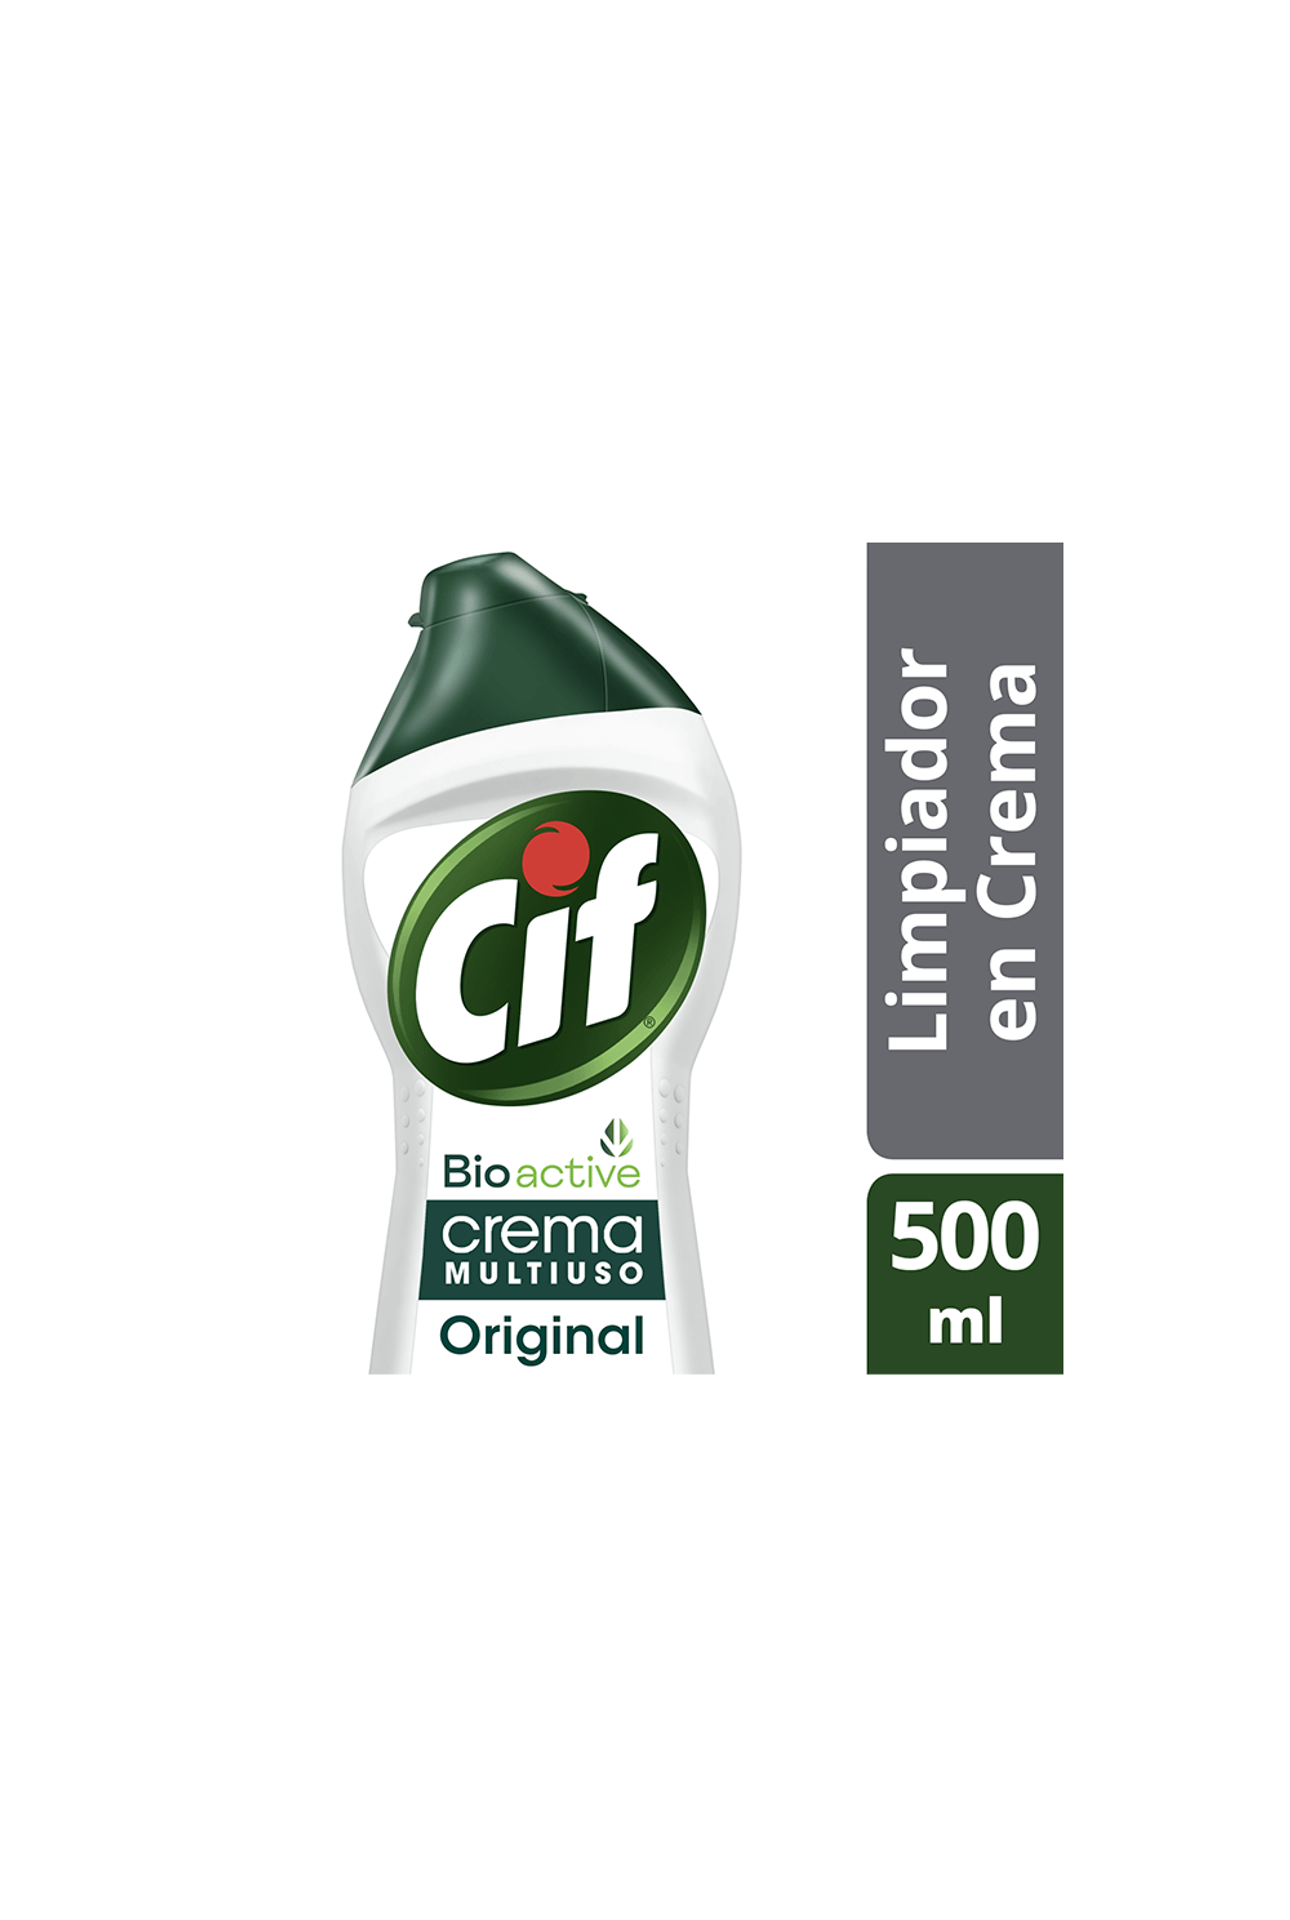 Crema Original Cif con Micropartículas, 500 ml –